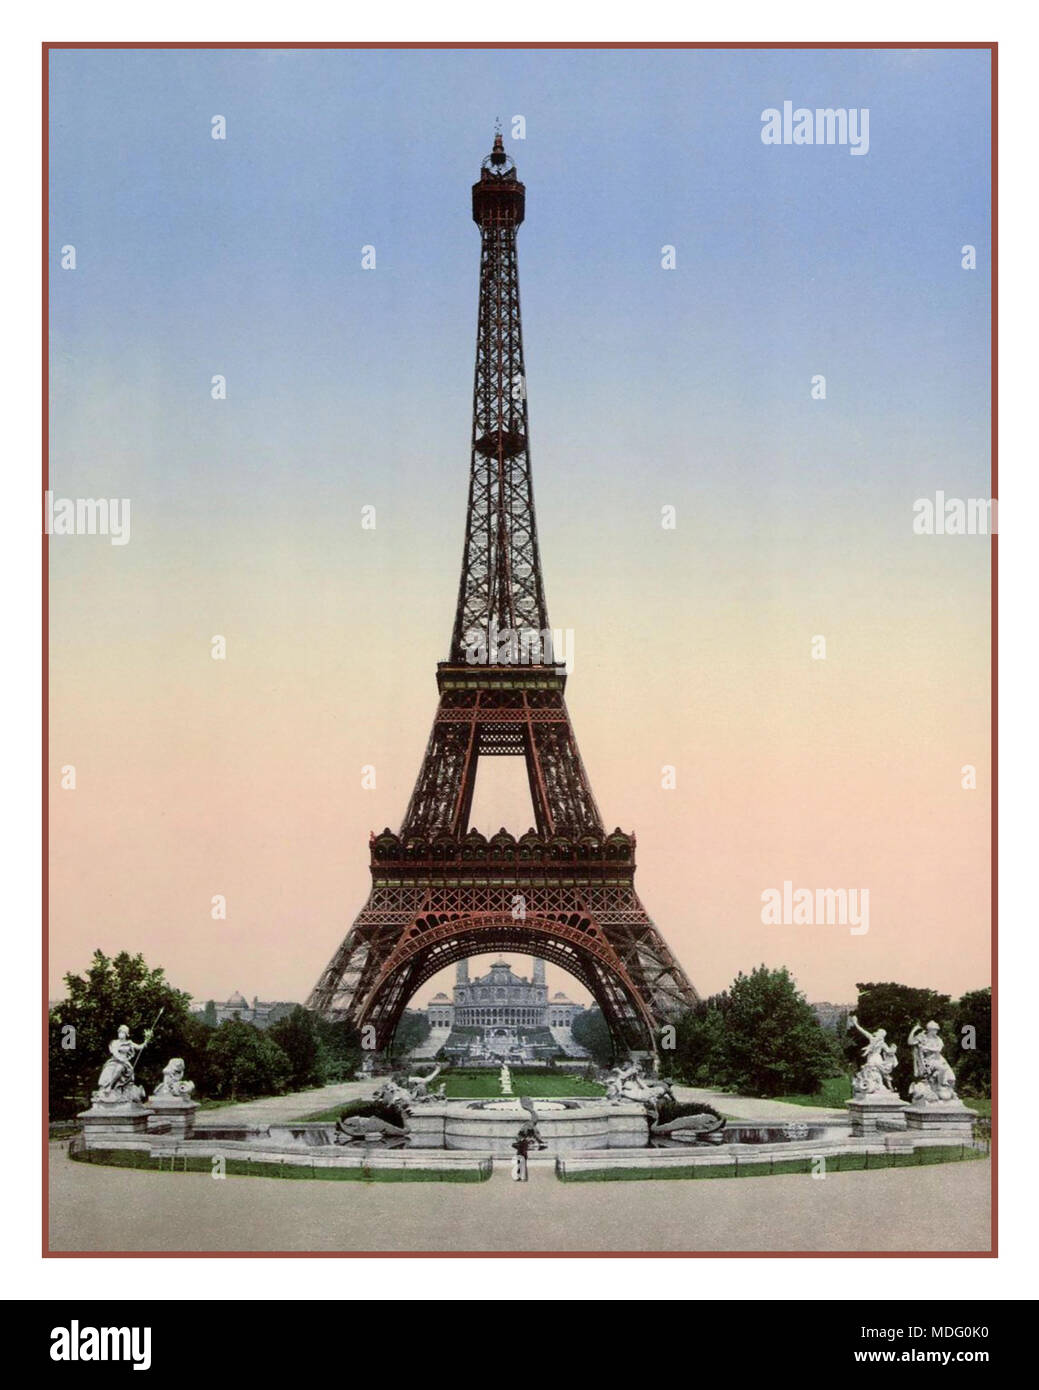 Vieille Tour Eiffel 1900 Vintage photochrom historique image couleur de la Tour Eiffel vue vers Trocadéro Exposition 'Universal 1900 Paris France' Banque D'Images